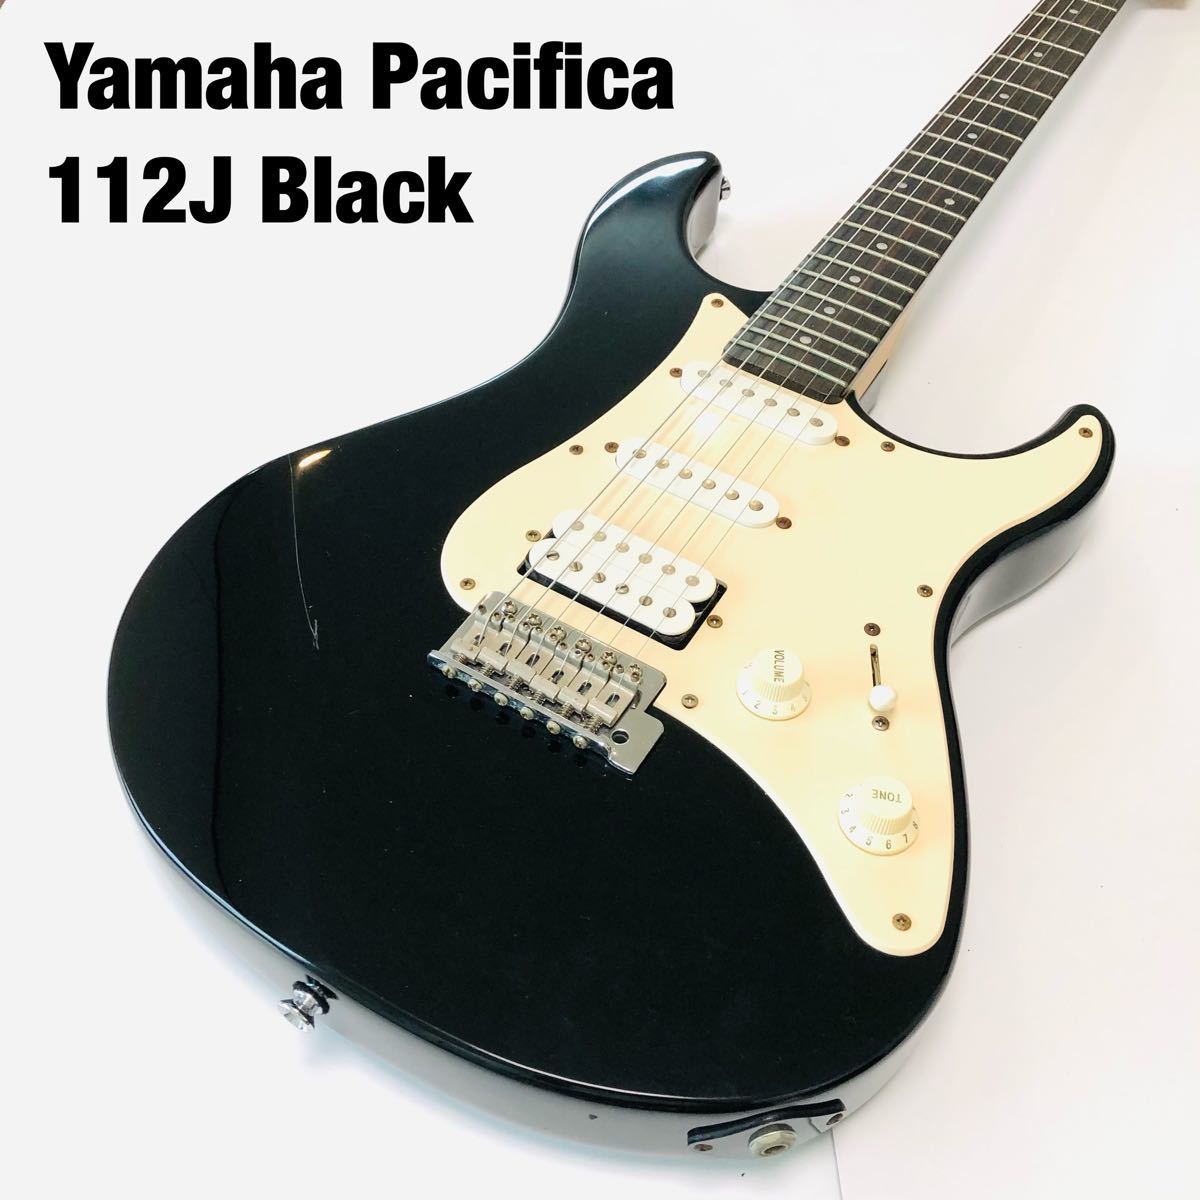 期間限定アンプ付 信頼の名器 Yamaha Pacifica 112 ブラック 入門用